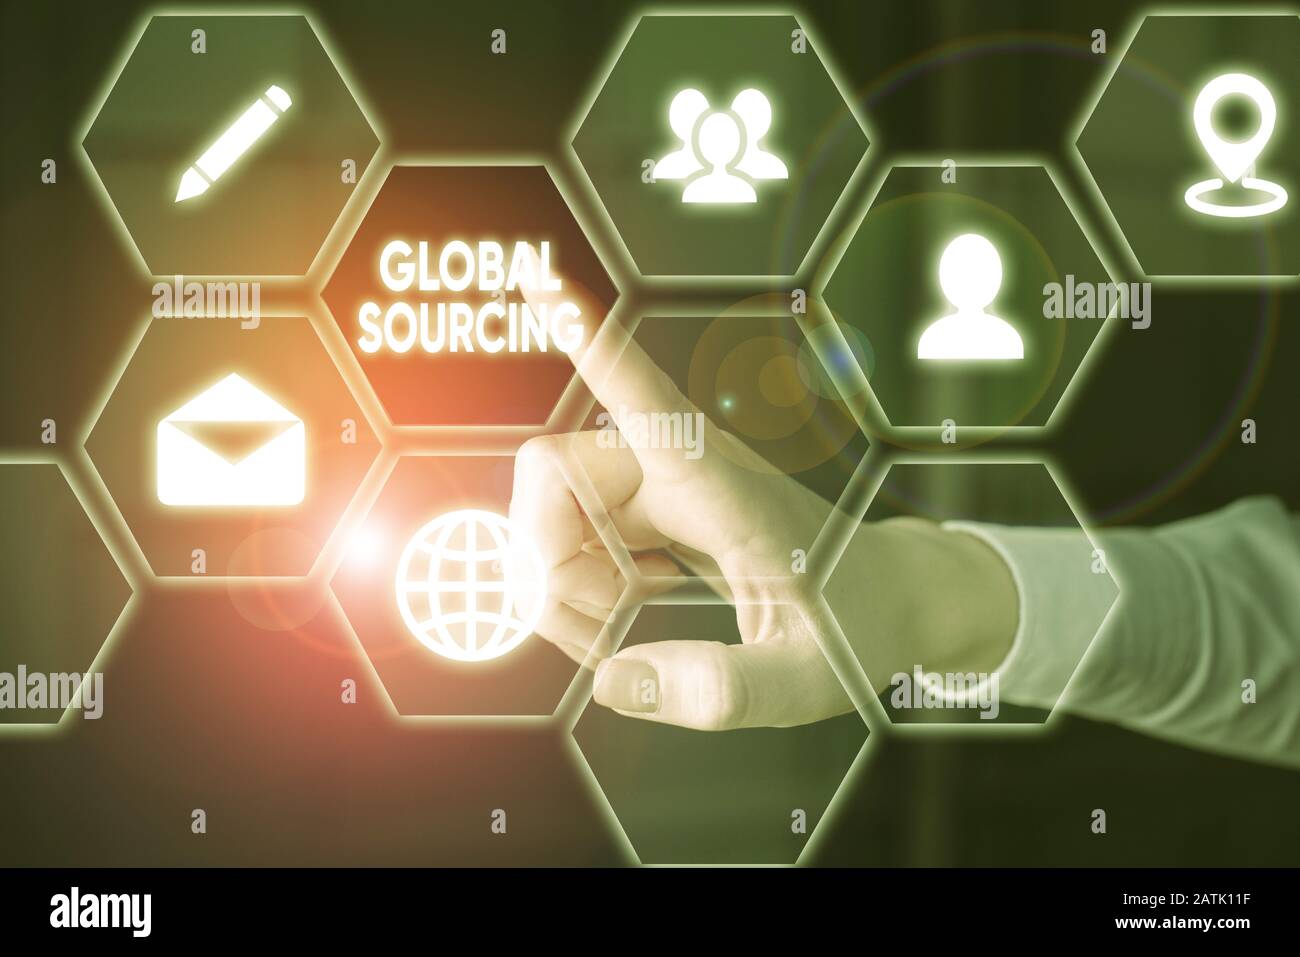 Word Writing Text Global Sourcing. Geschäftsfoto, auf dem die Praxis der Suche nach Waren und Dienstleistungen über einen Rahmen hinaus gezeigt wird Stockfoto